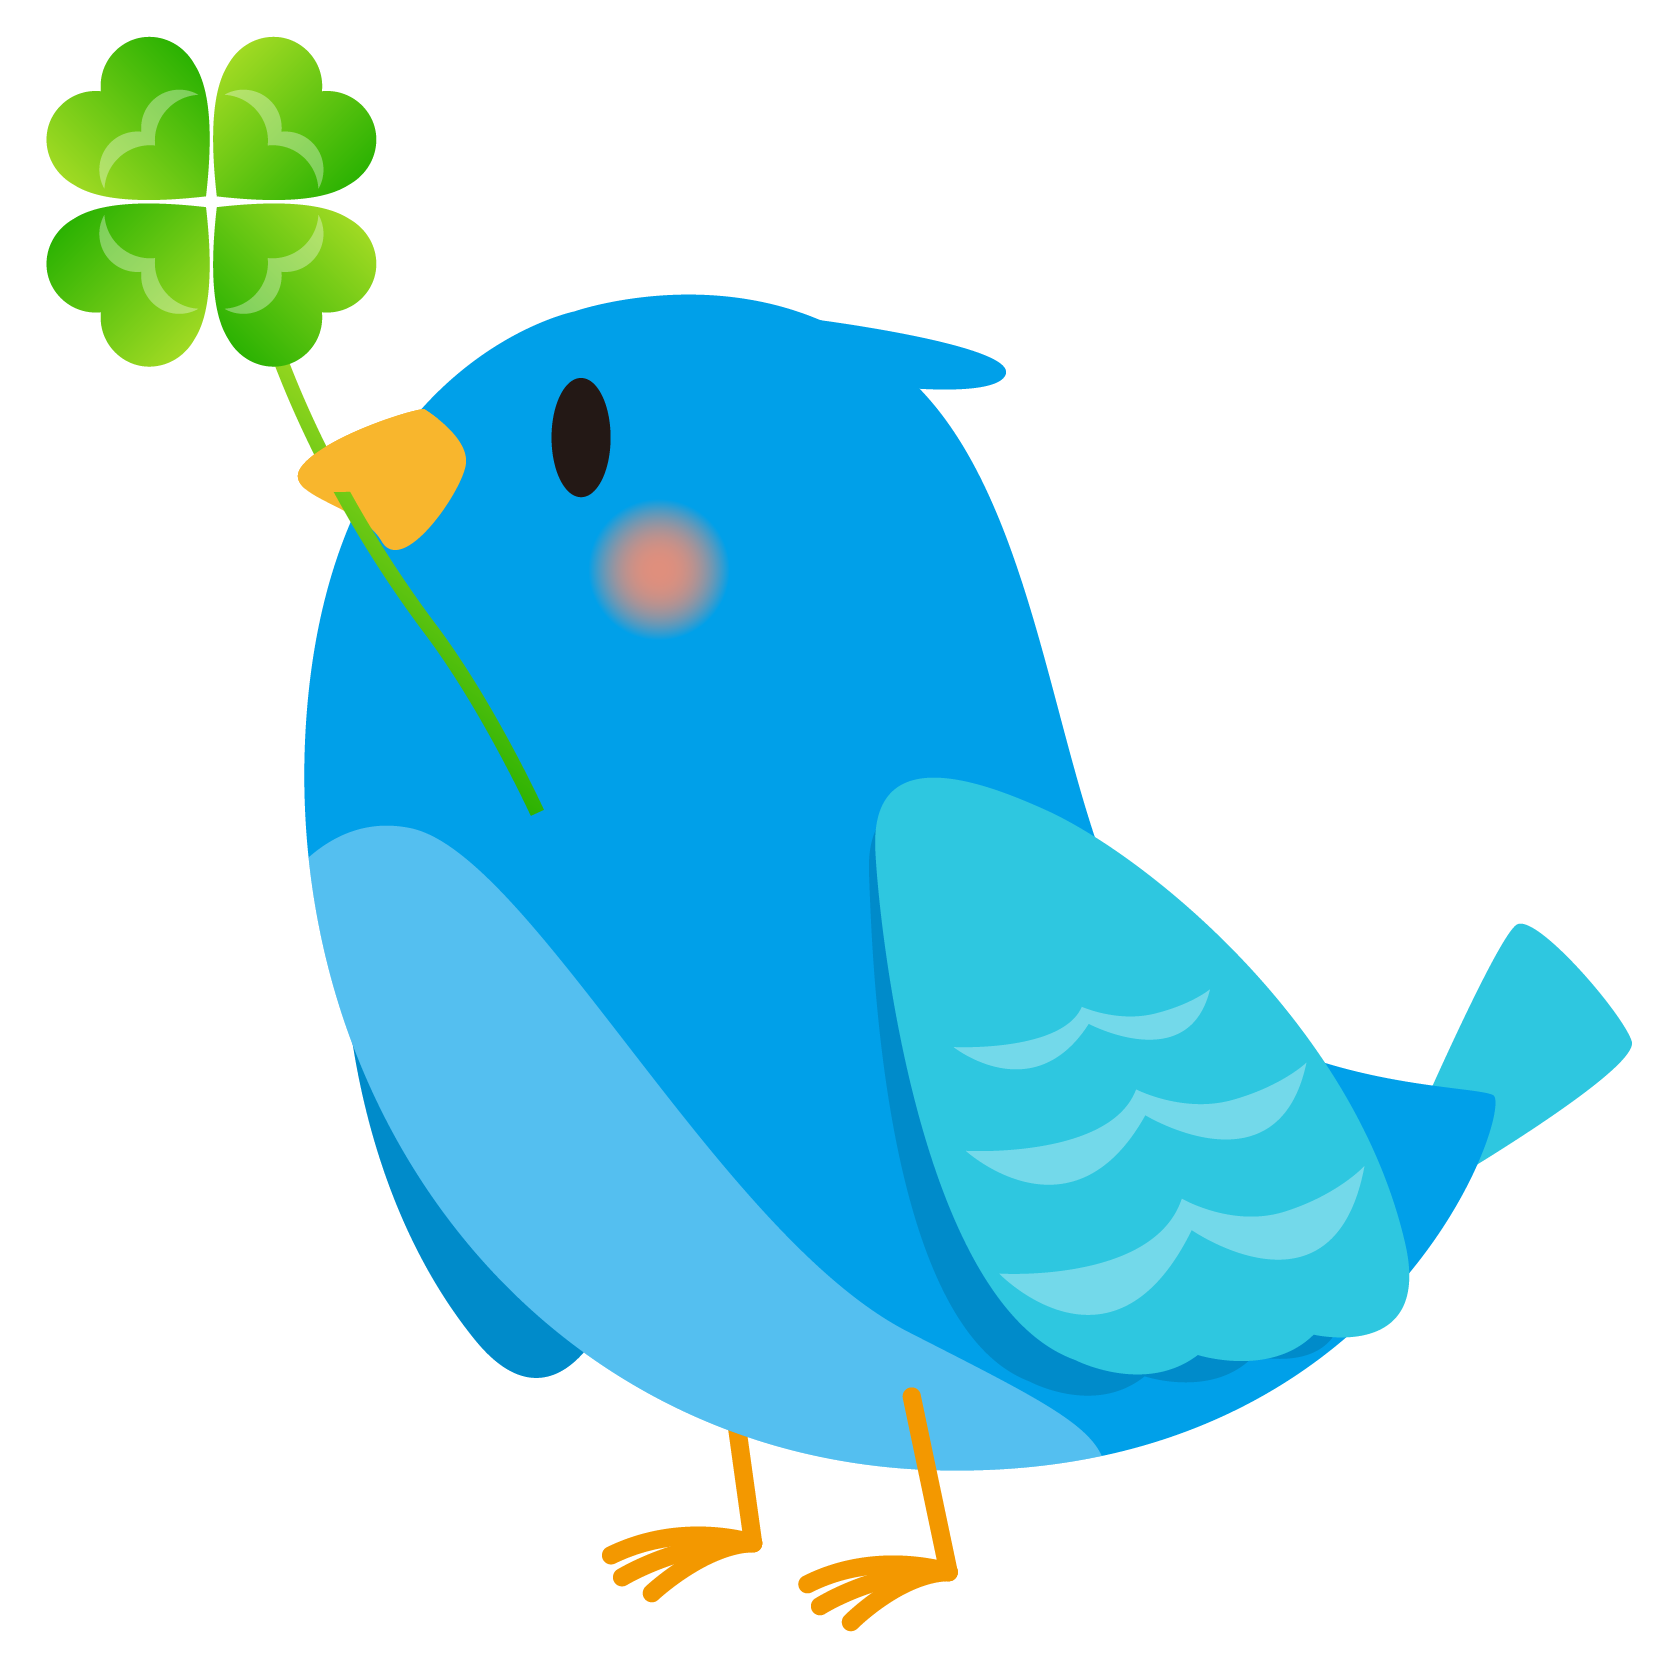 商用フリー 無料イラスト 幸せの青い鳥のイラスト Happy Blue Bird002 商用ok フリー素材集 ナイスなイラスト